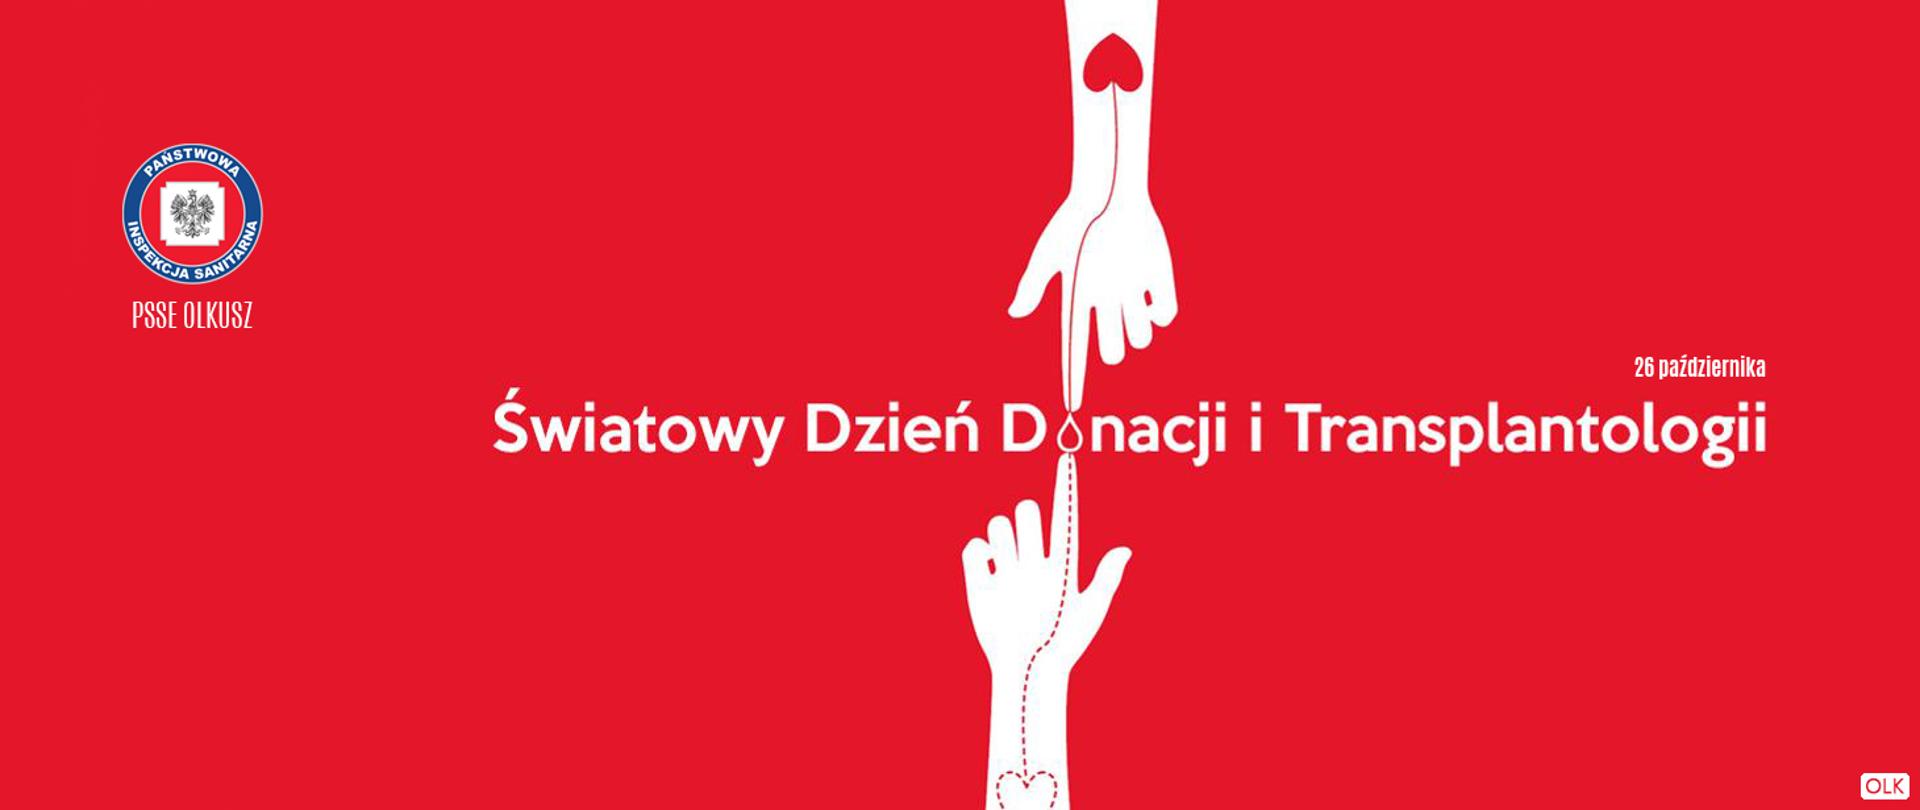 Światowy Dzień Donacji i Transplantacji